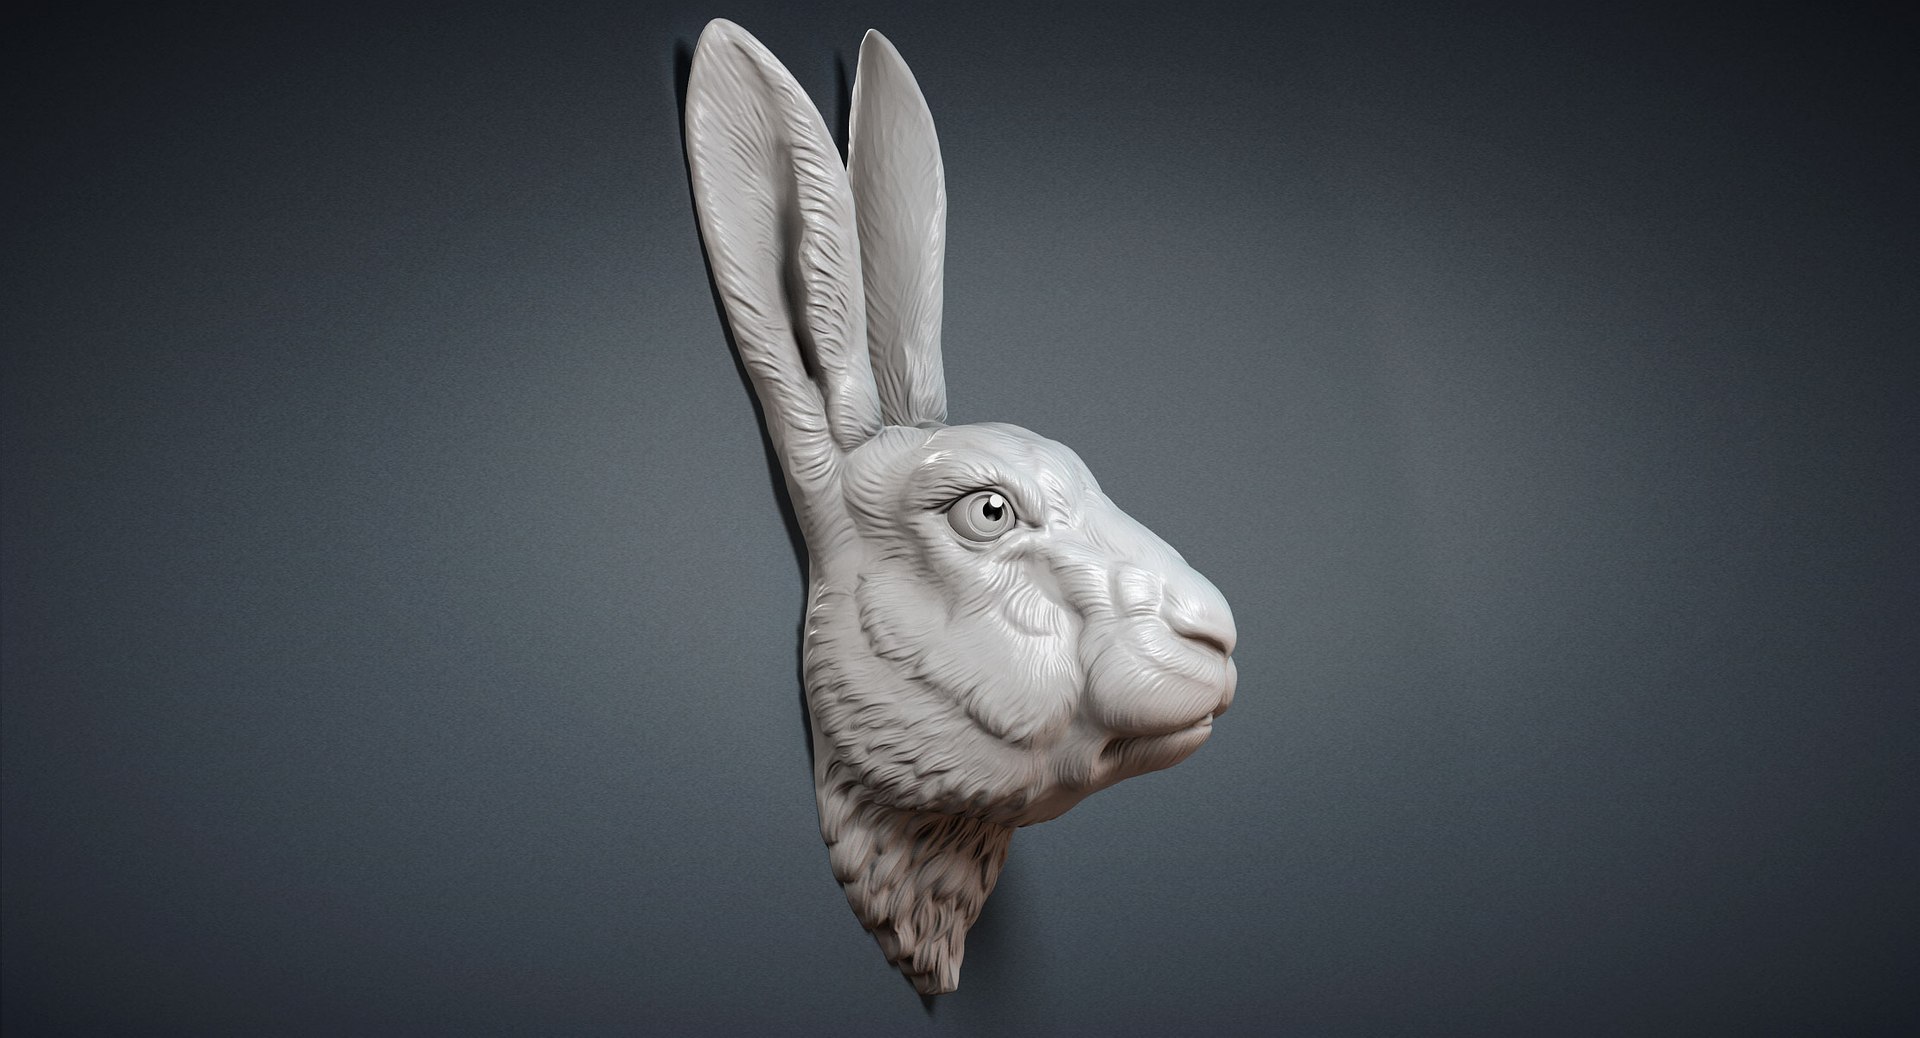 rabbit hare head sculpture model https://p.turbosquid.com/ts-thumb/Jg/ifIKmI/P4d1ePtJ/rabbitheaddigitalsculpture3dmodel01/jpg/1511447133/1920x1080/fit_q87/fd4a1d051af1de5215da3d7a97015f9fe79a5aad/rabbitheaddigitalsculpture3dmodel01.jpg